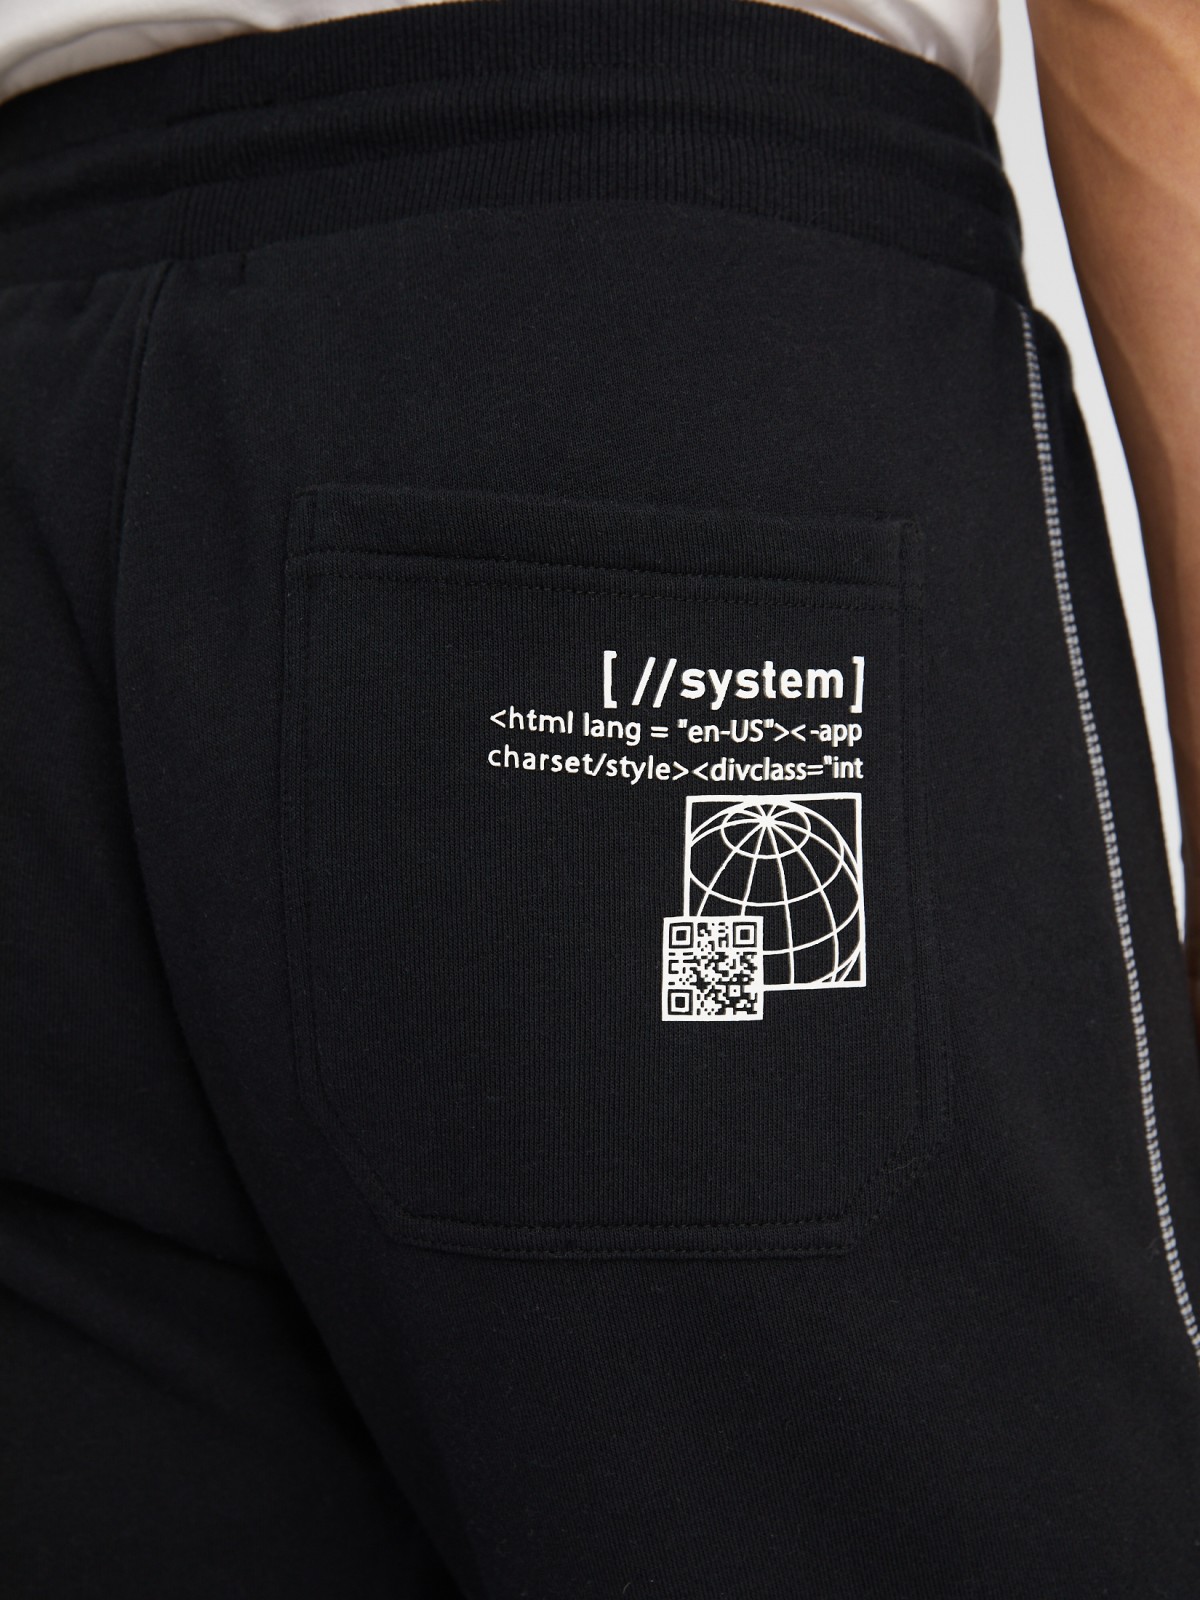 Утеплённые трикотажные брюки-джоггеры в спортивном стиле с принтом zolla 213337679051, цвет черный, размер S - фото 6